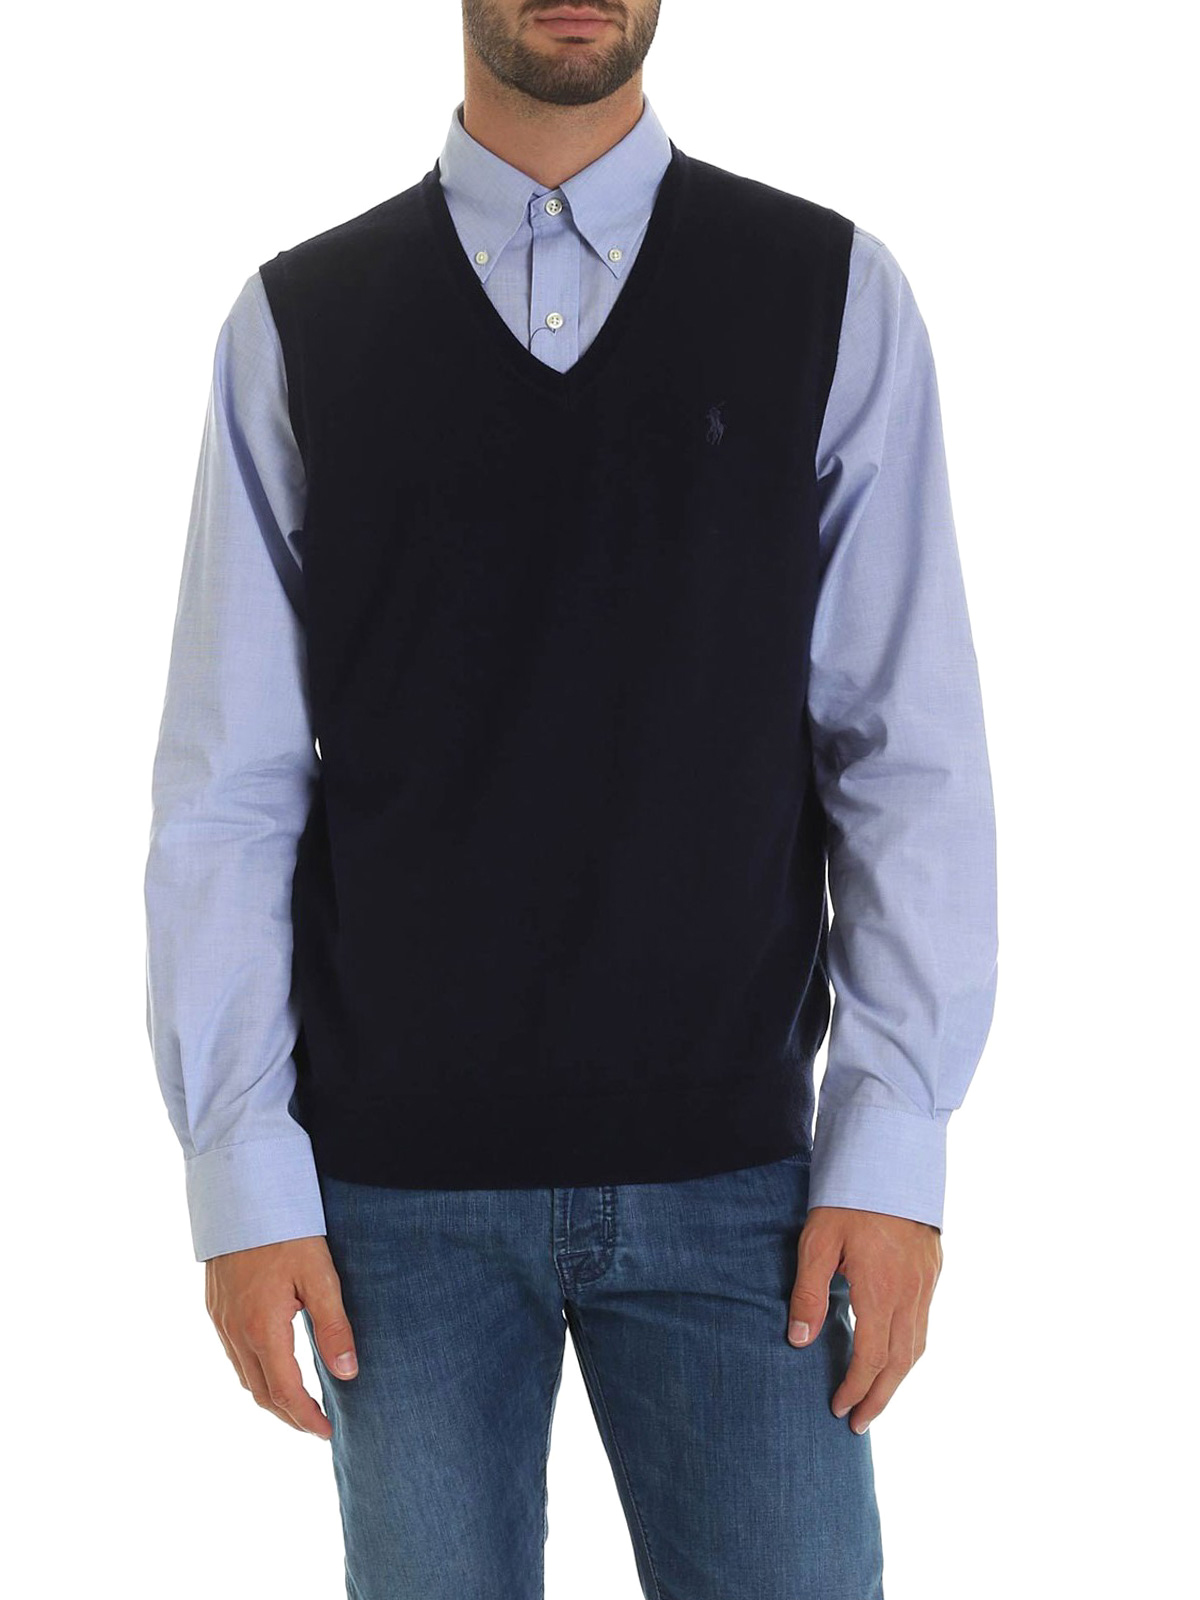 Vests Polo Ralph Lauren - Merino wool sleeveless sweater - 710758369002